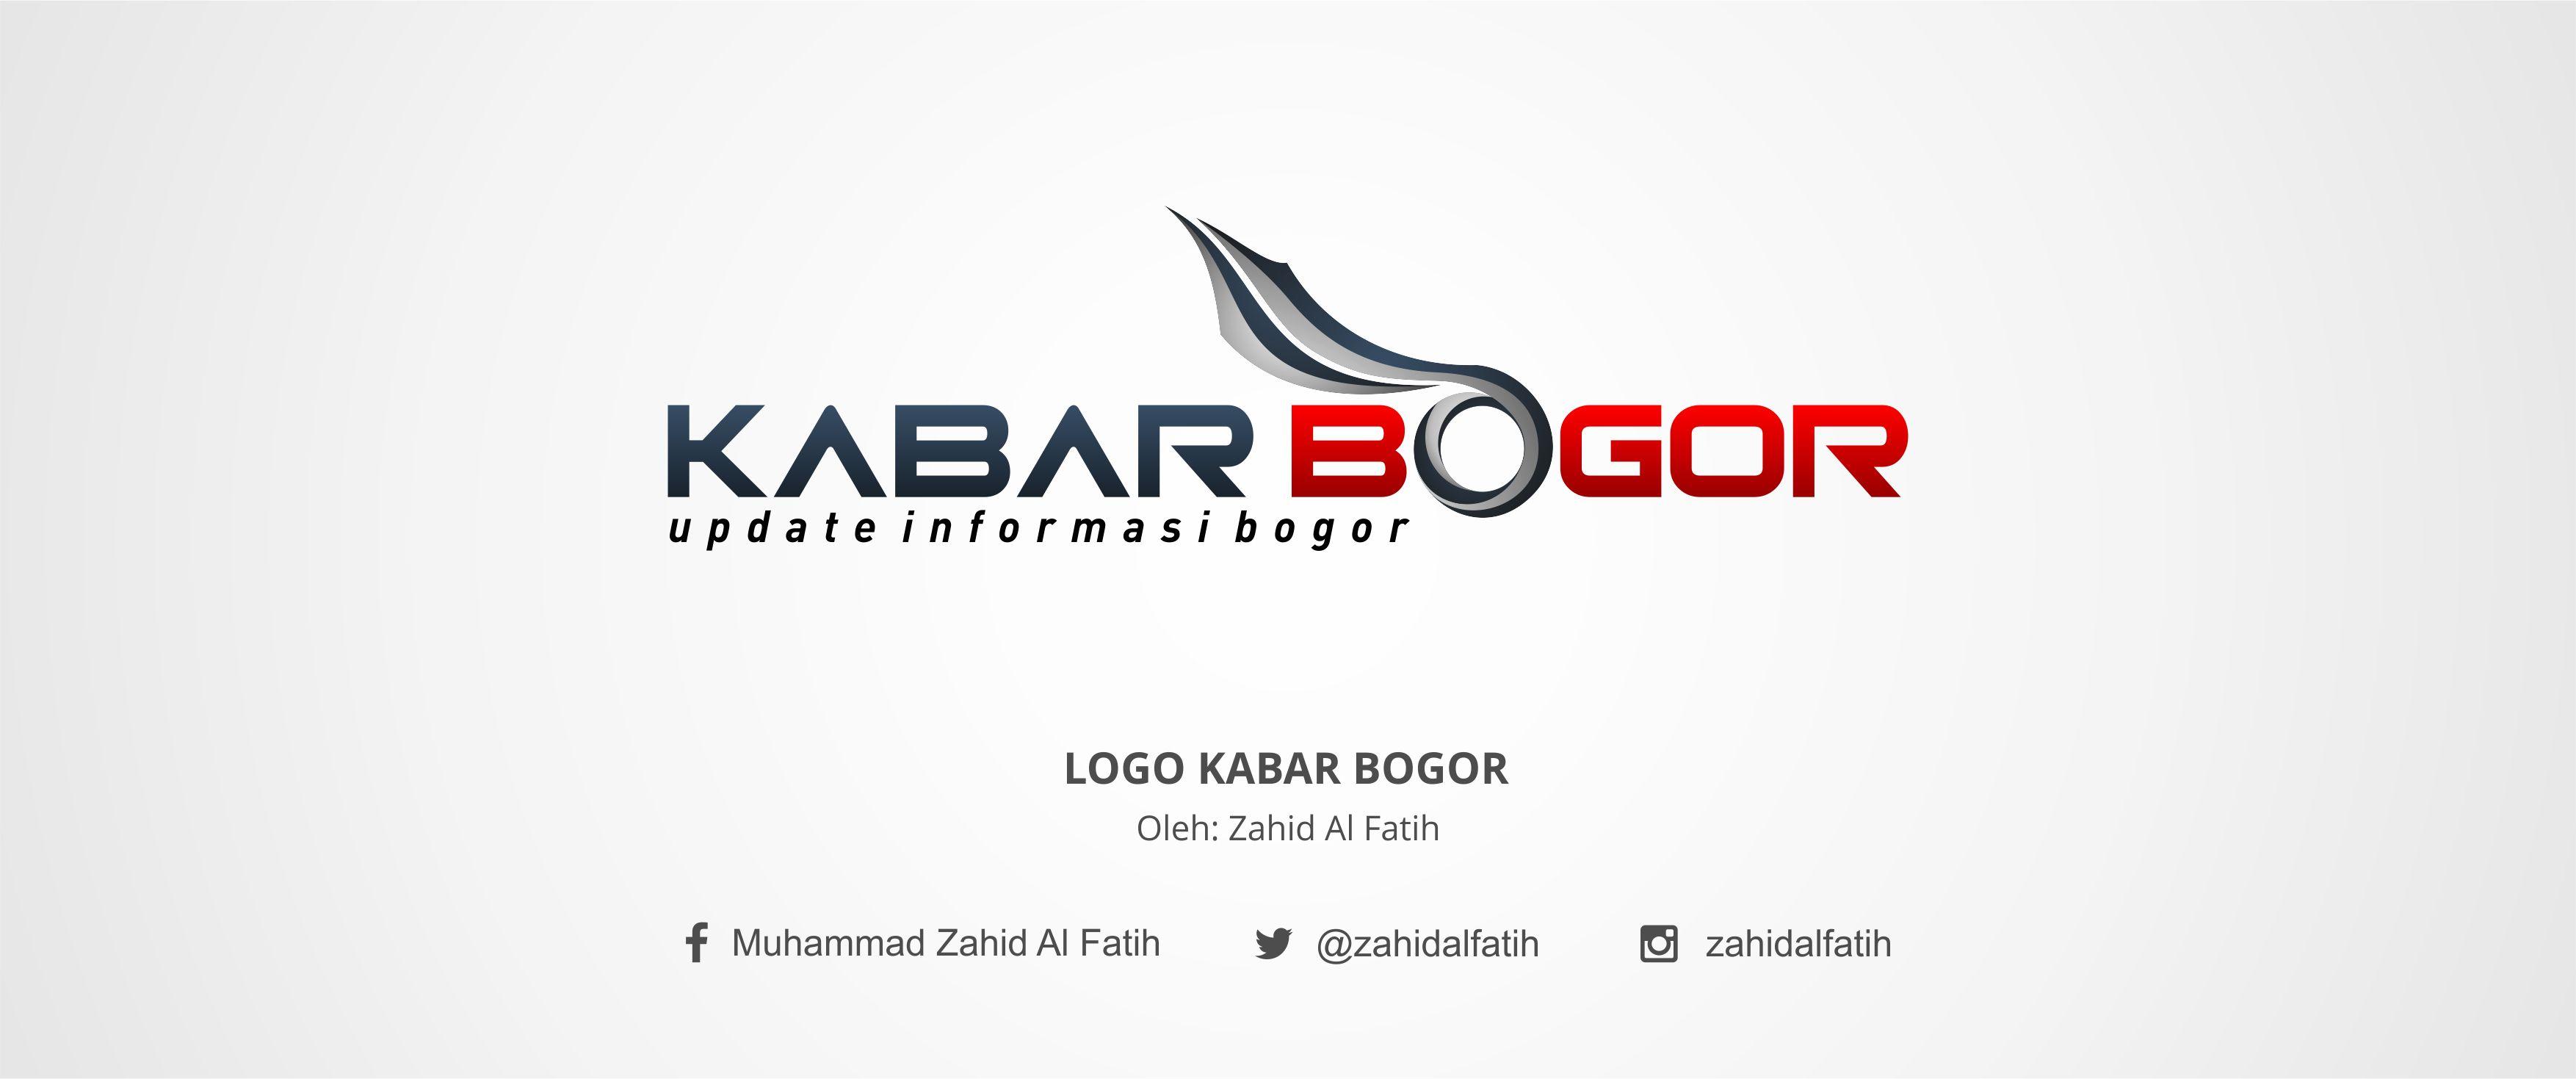 Kabar Logo - Logo Kabar Bogor